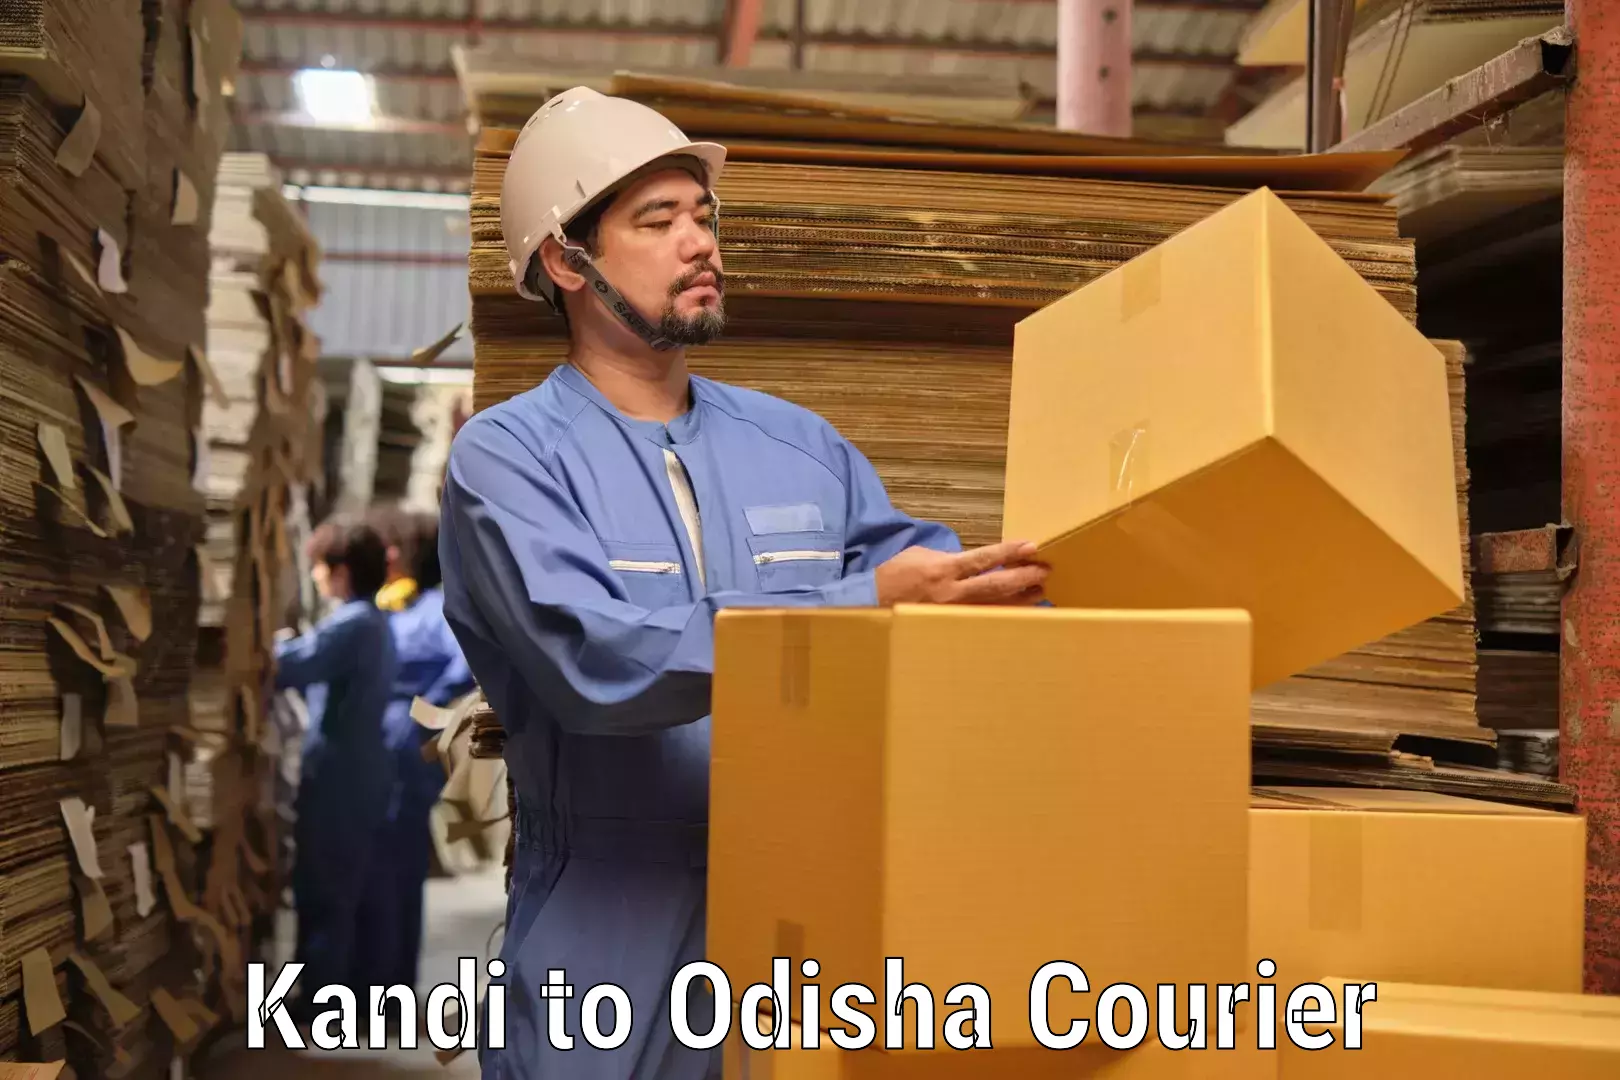 Courier service comparison Kandi to Galleri